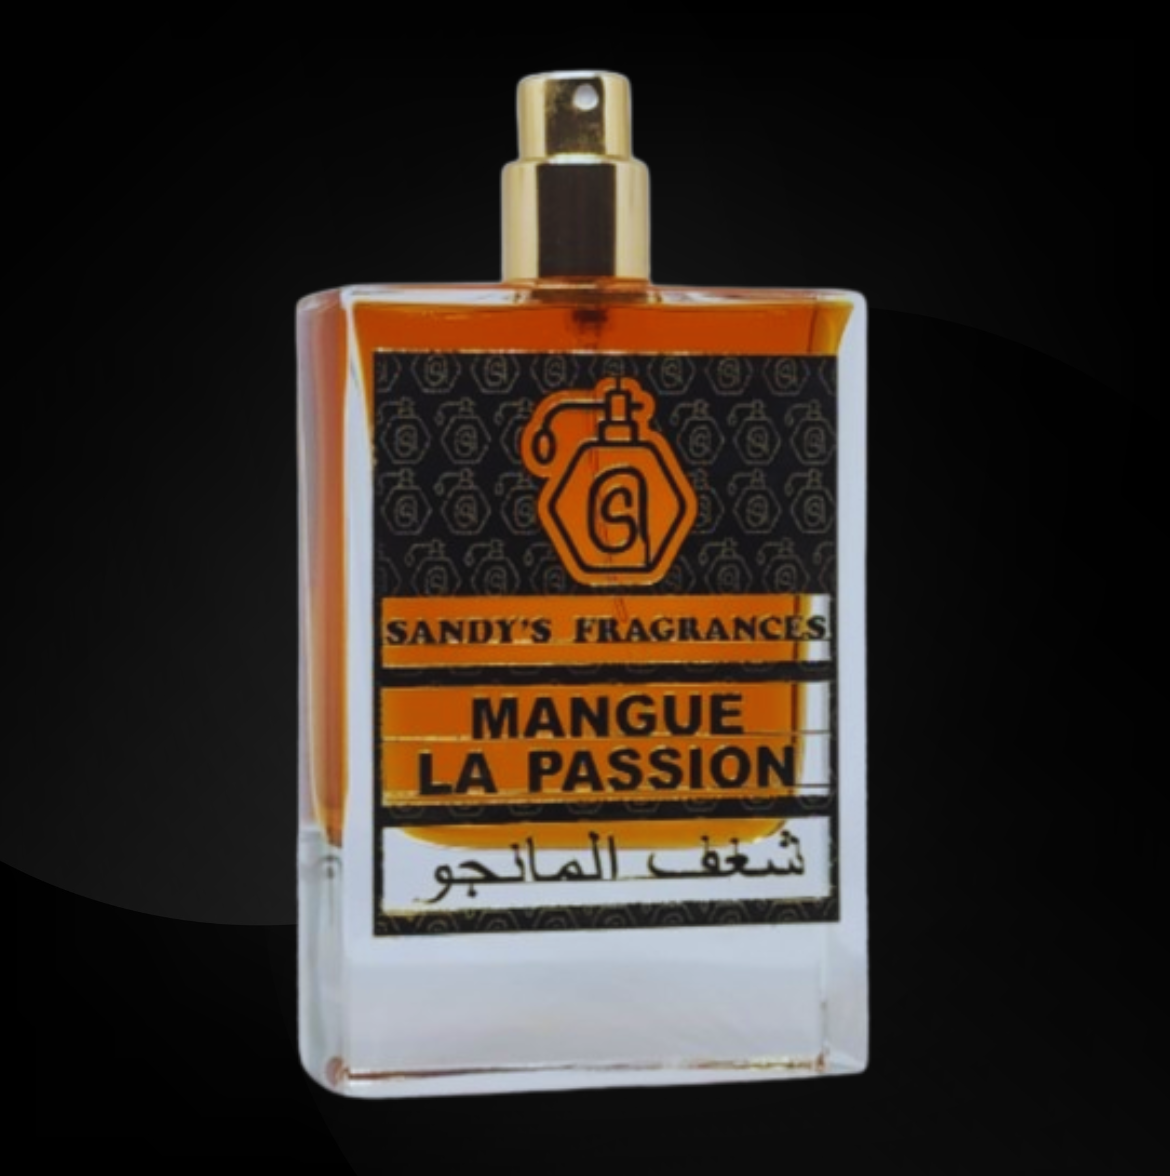 MANGUE LA PASSION A DUBAI EDITION by Sandy’s fragrance